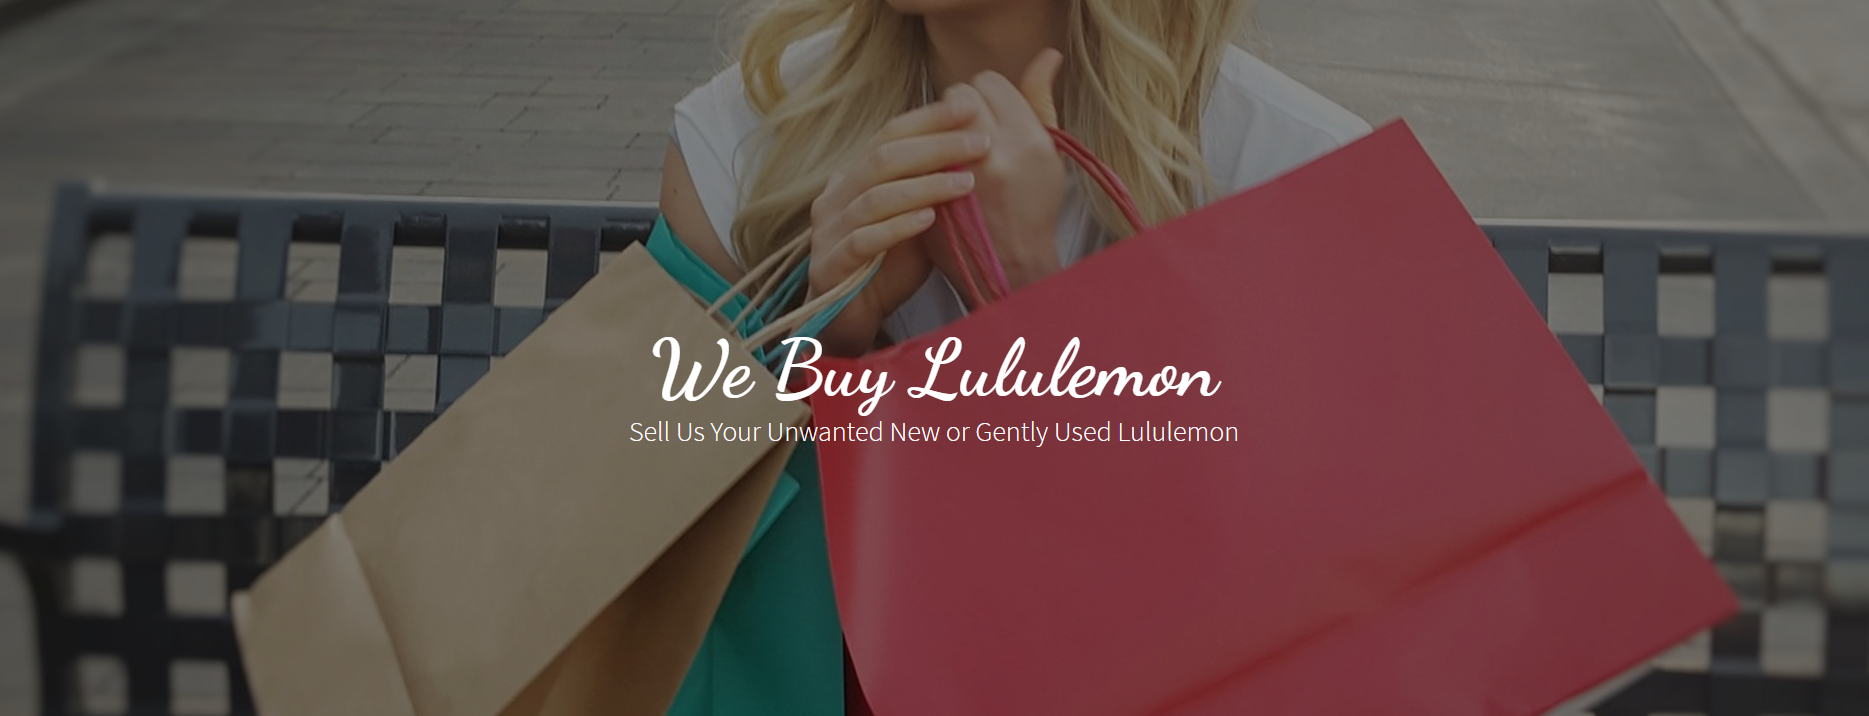 buy used lululemon